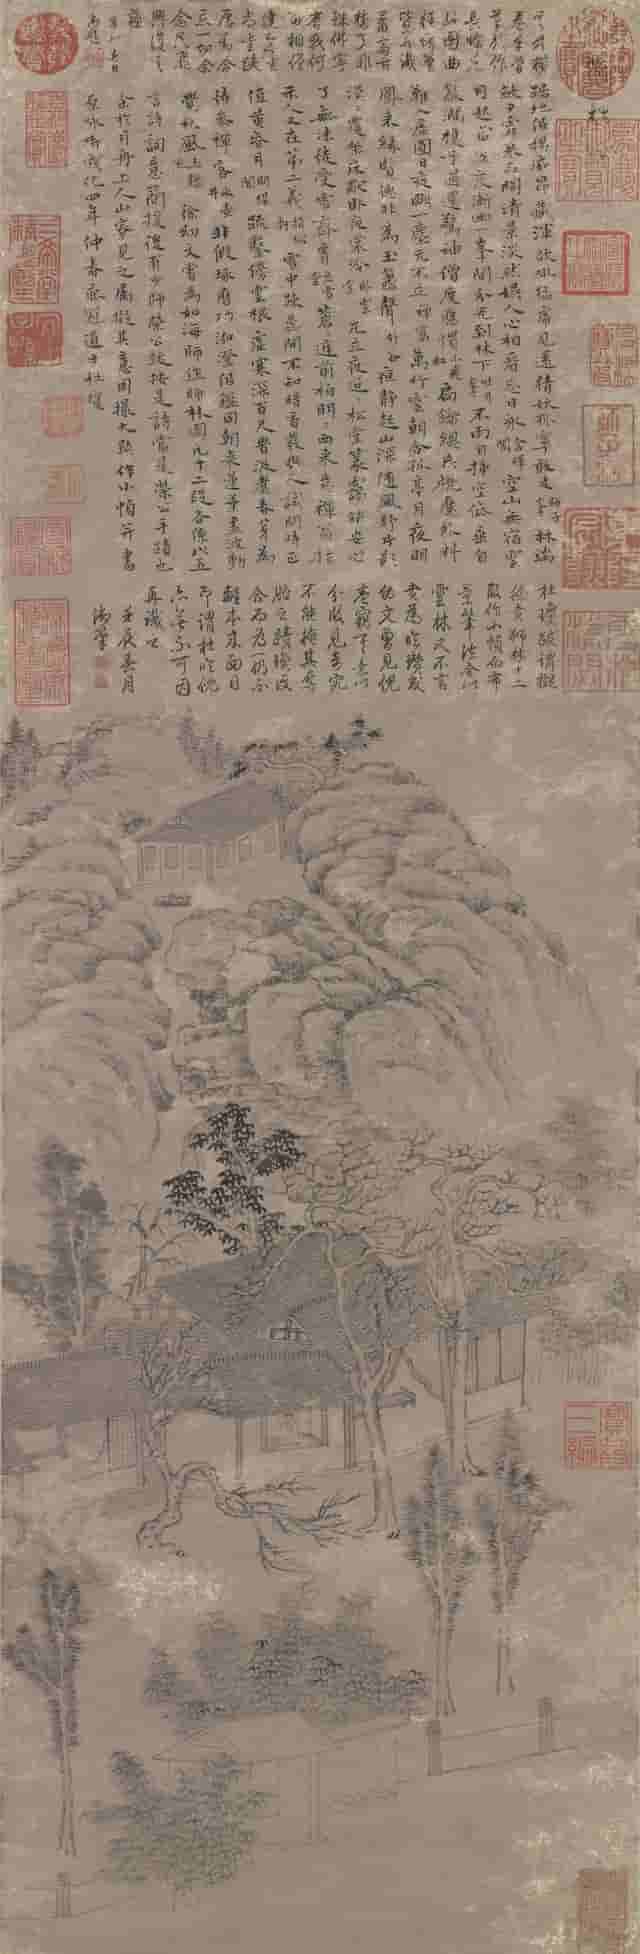 元代倪瓒画过的狮子林，680岁生日快乐